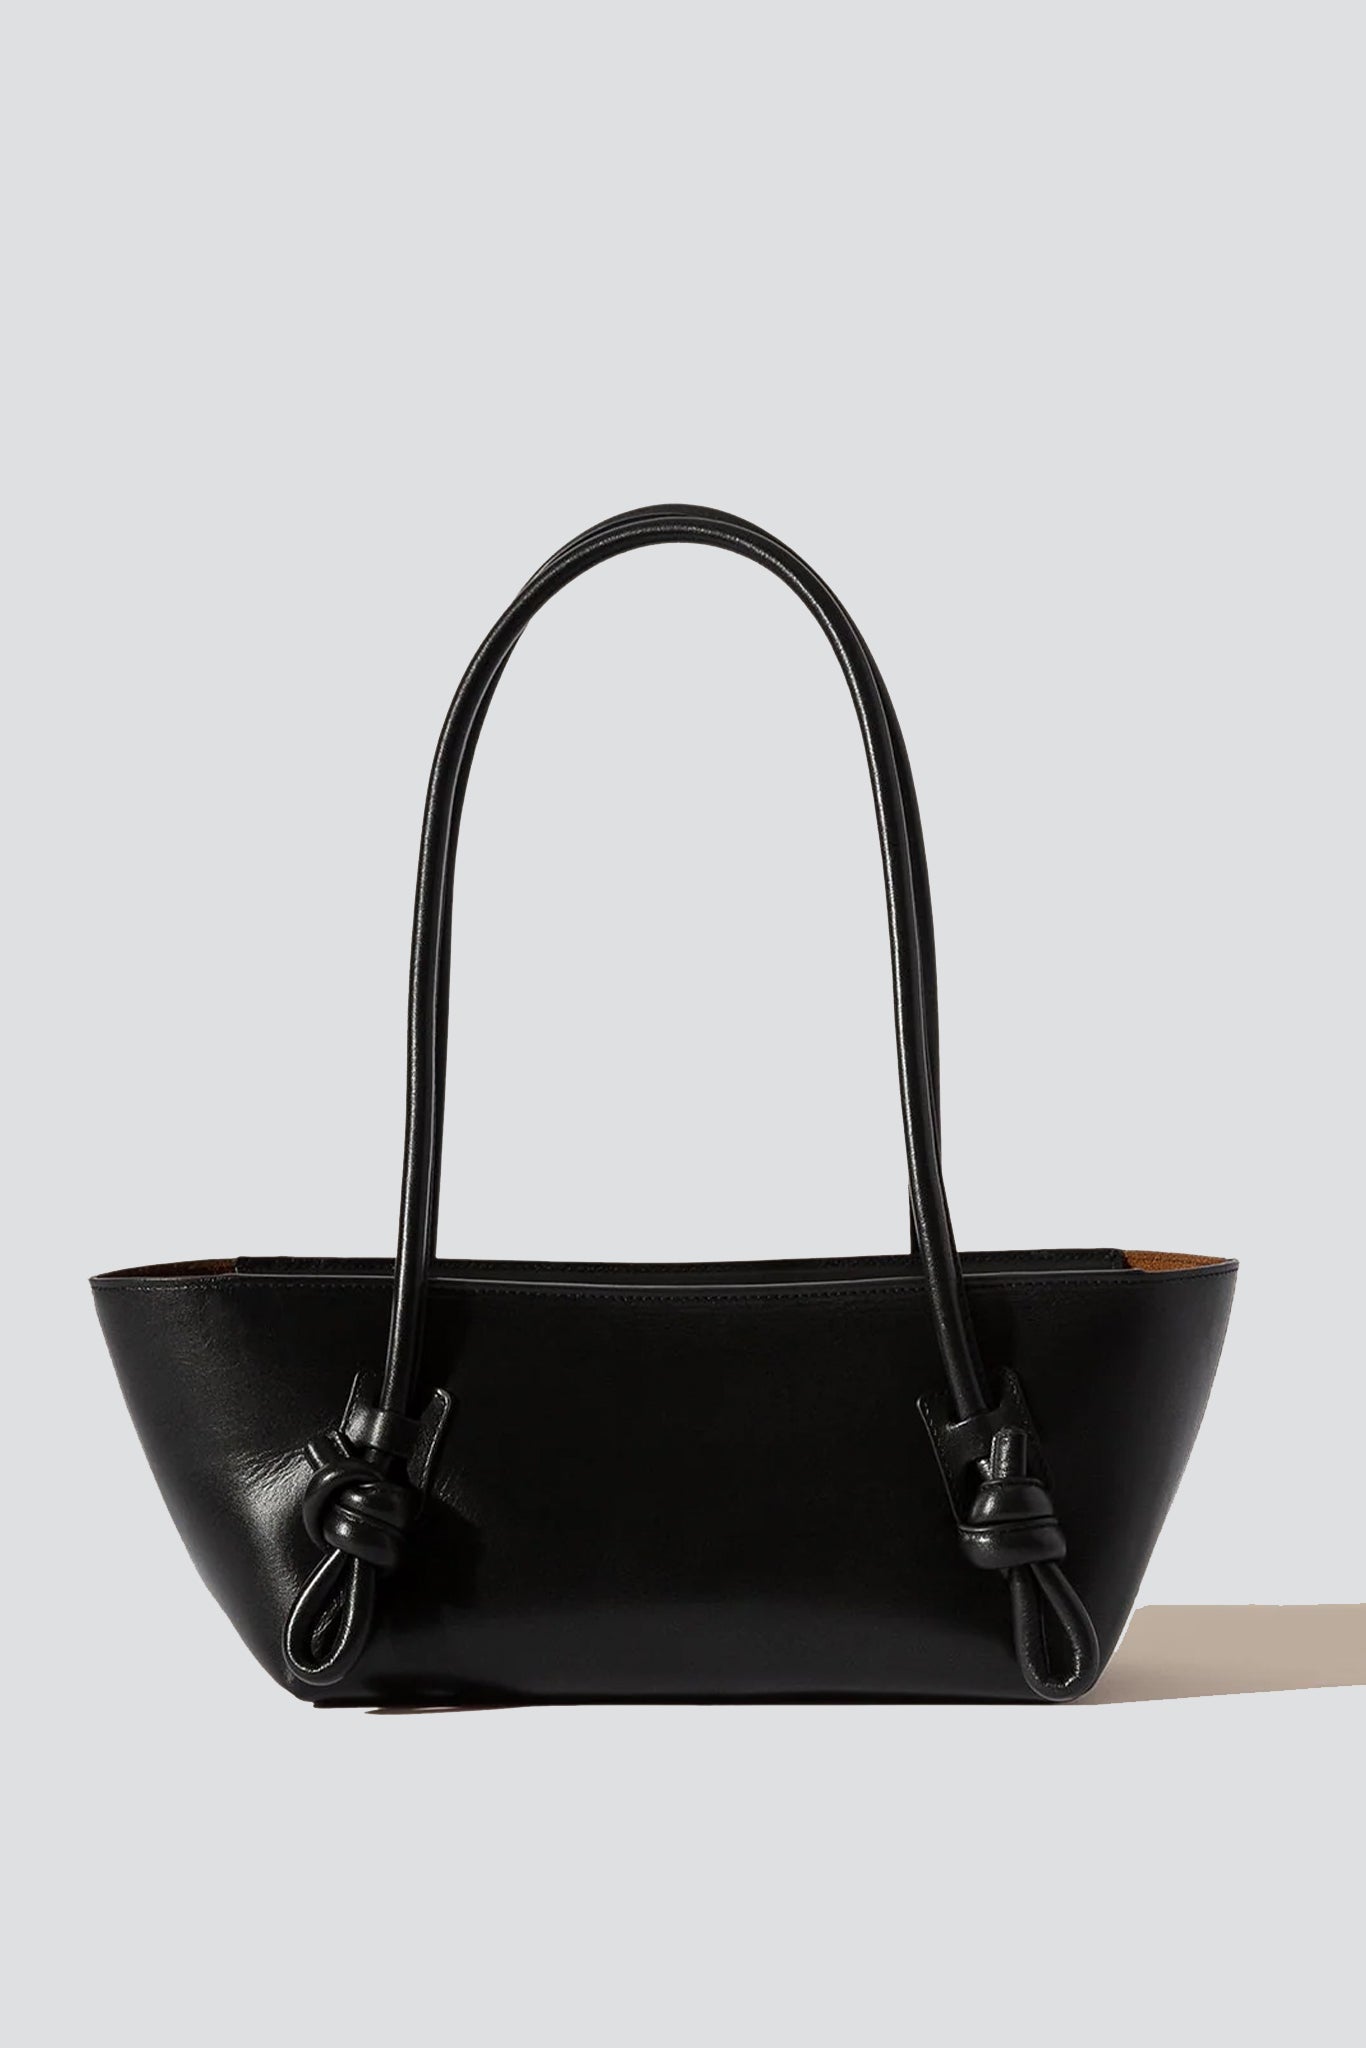 Baguette Large - Black leather bag